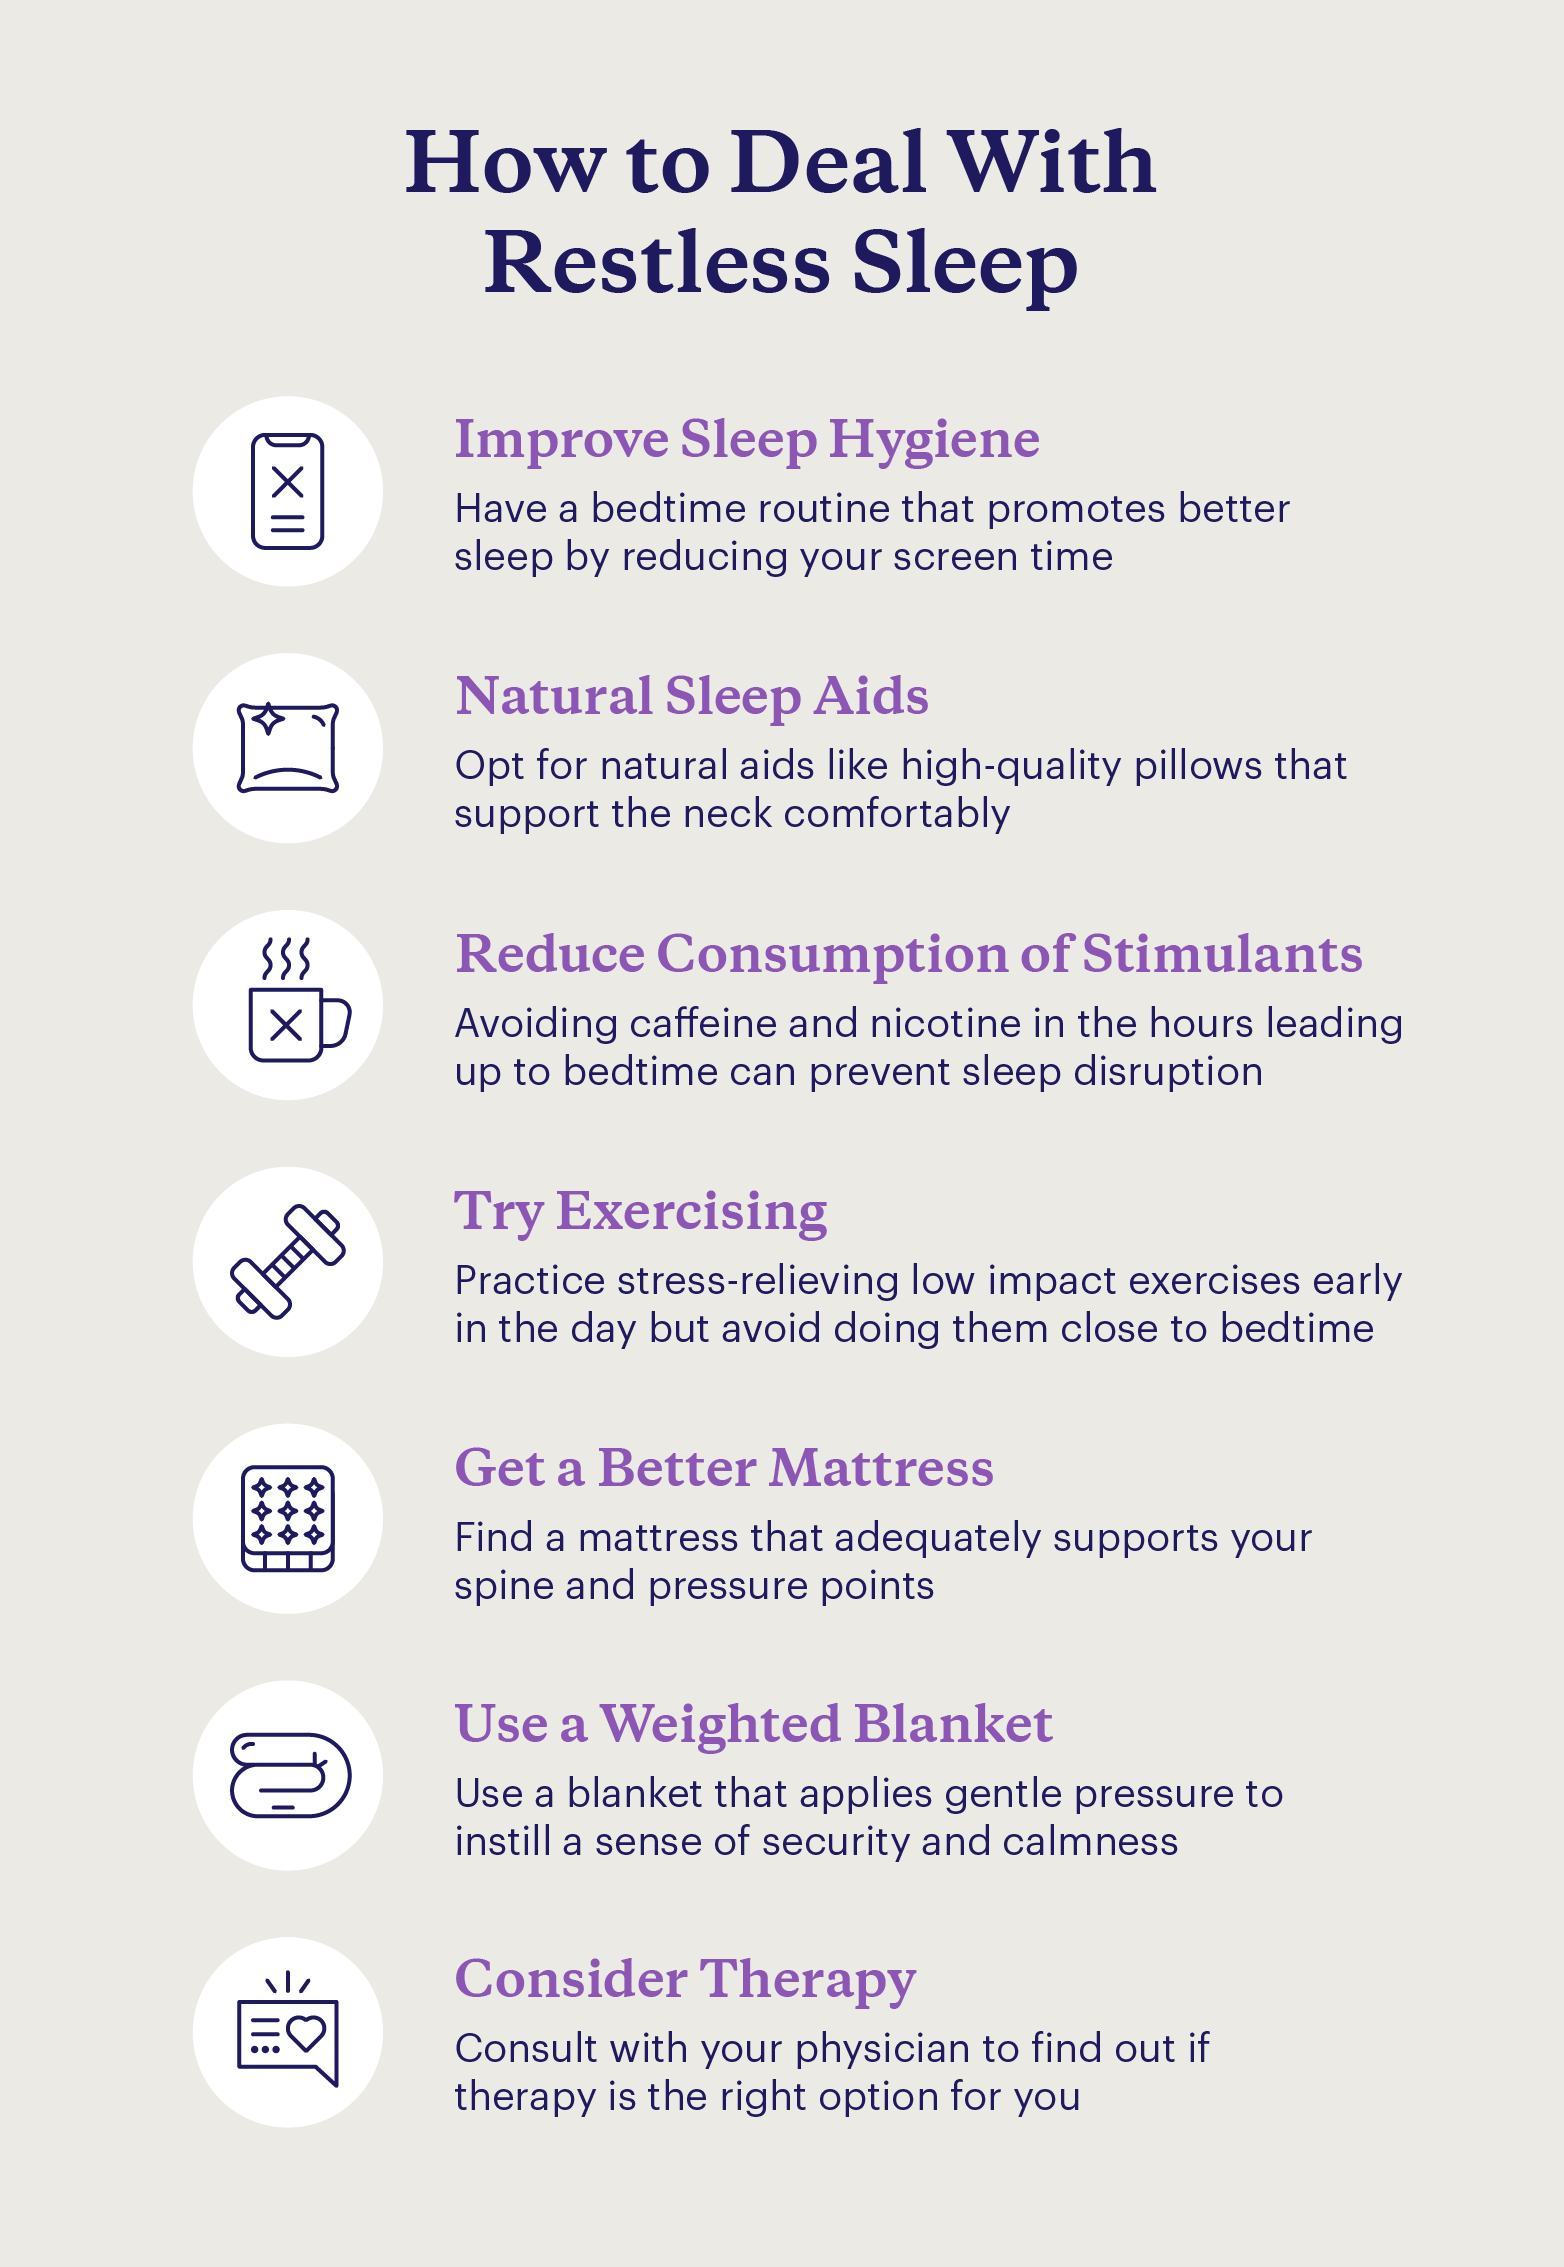 Tips for improving restless sleep. 